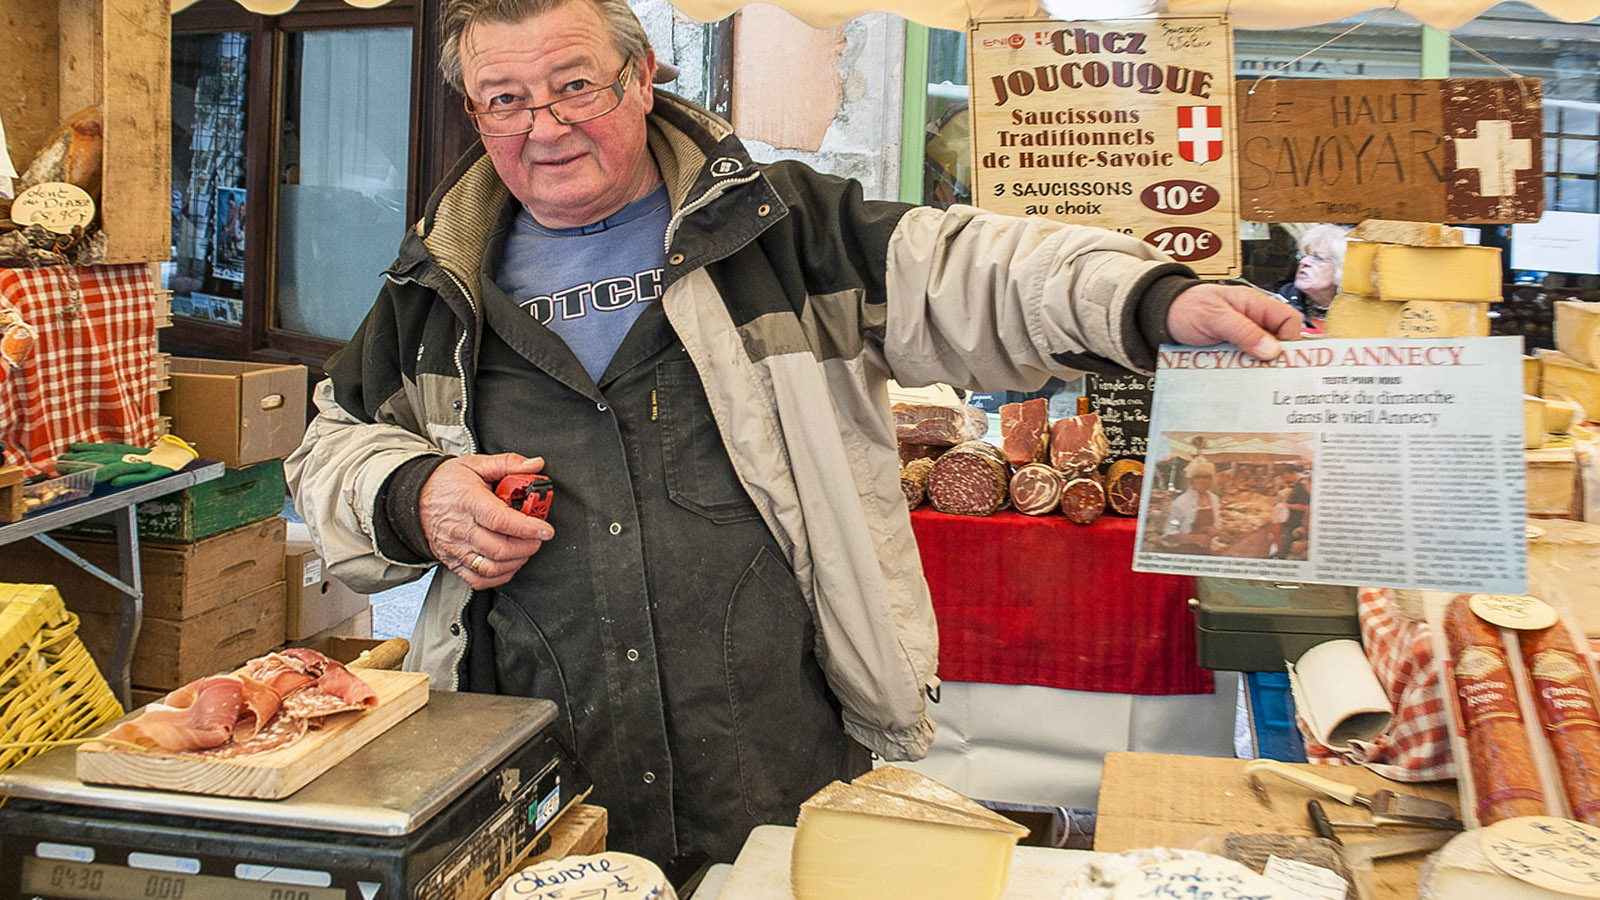 Stolz auf einen Zeitungsartikel: Käseverkäufer auf dem Sonntagsmarkt von Annecy. Foto: Hilke Maunder